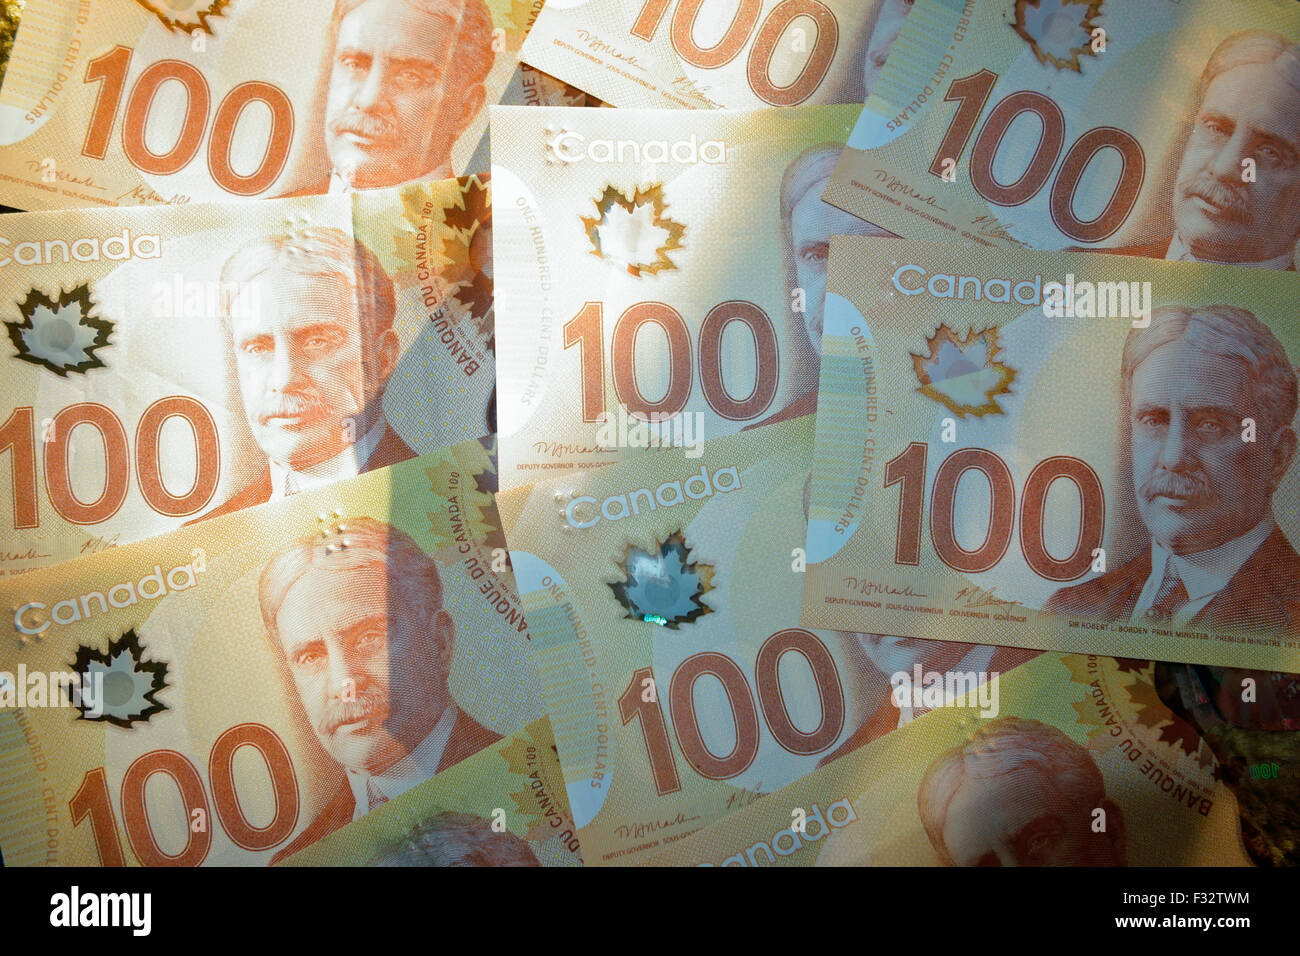 Una nuova collezione di 100 Canadian dollar nota banca fatture denaro Foto Stock